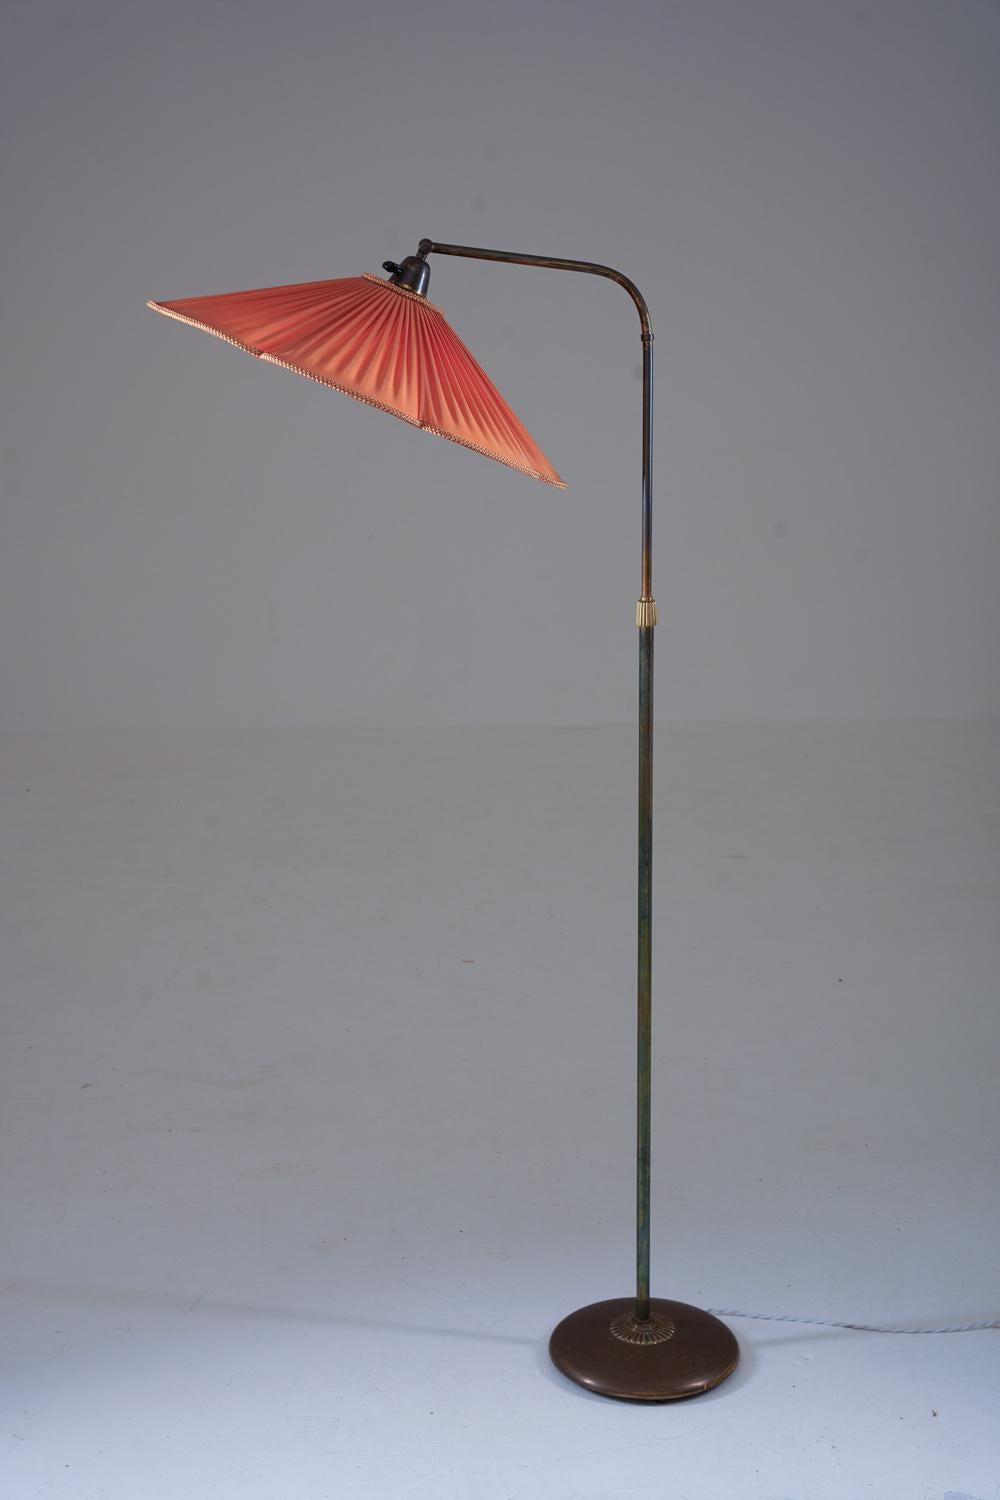 Schöne moderne schwedische Stehlampe von Nordiska Kompaniet (NK), Schweden, 1940er Jahre.
Die Leuchte besteht aus einem Sockel und einer Stange aus Messing, die einen schwenkbaren Arm tragen, der den Lampenschirm hält.
Die Höhe ist zwischen